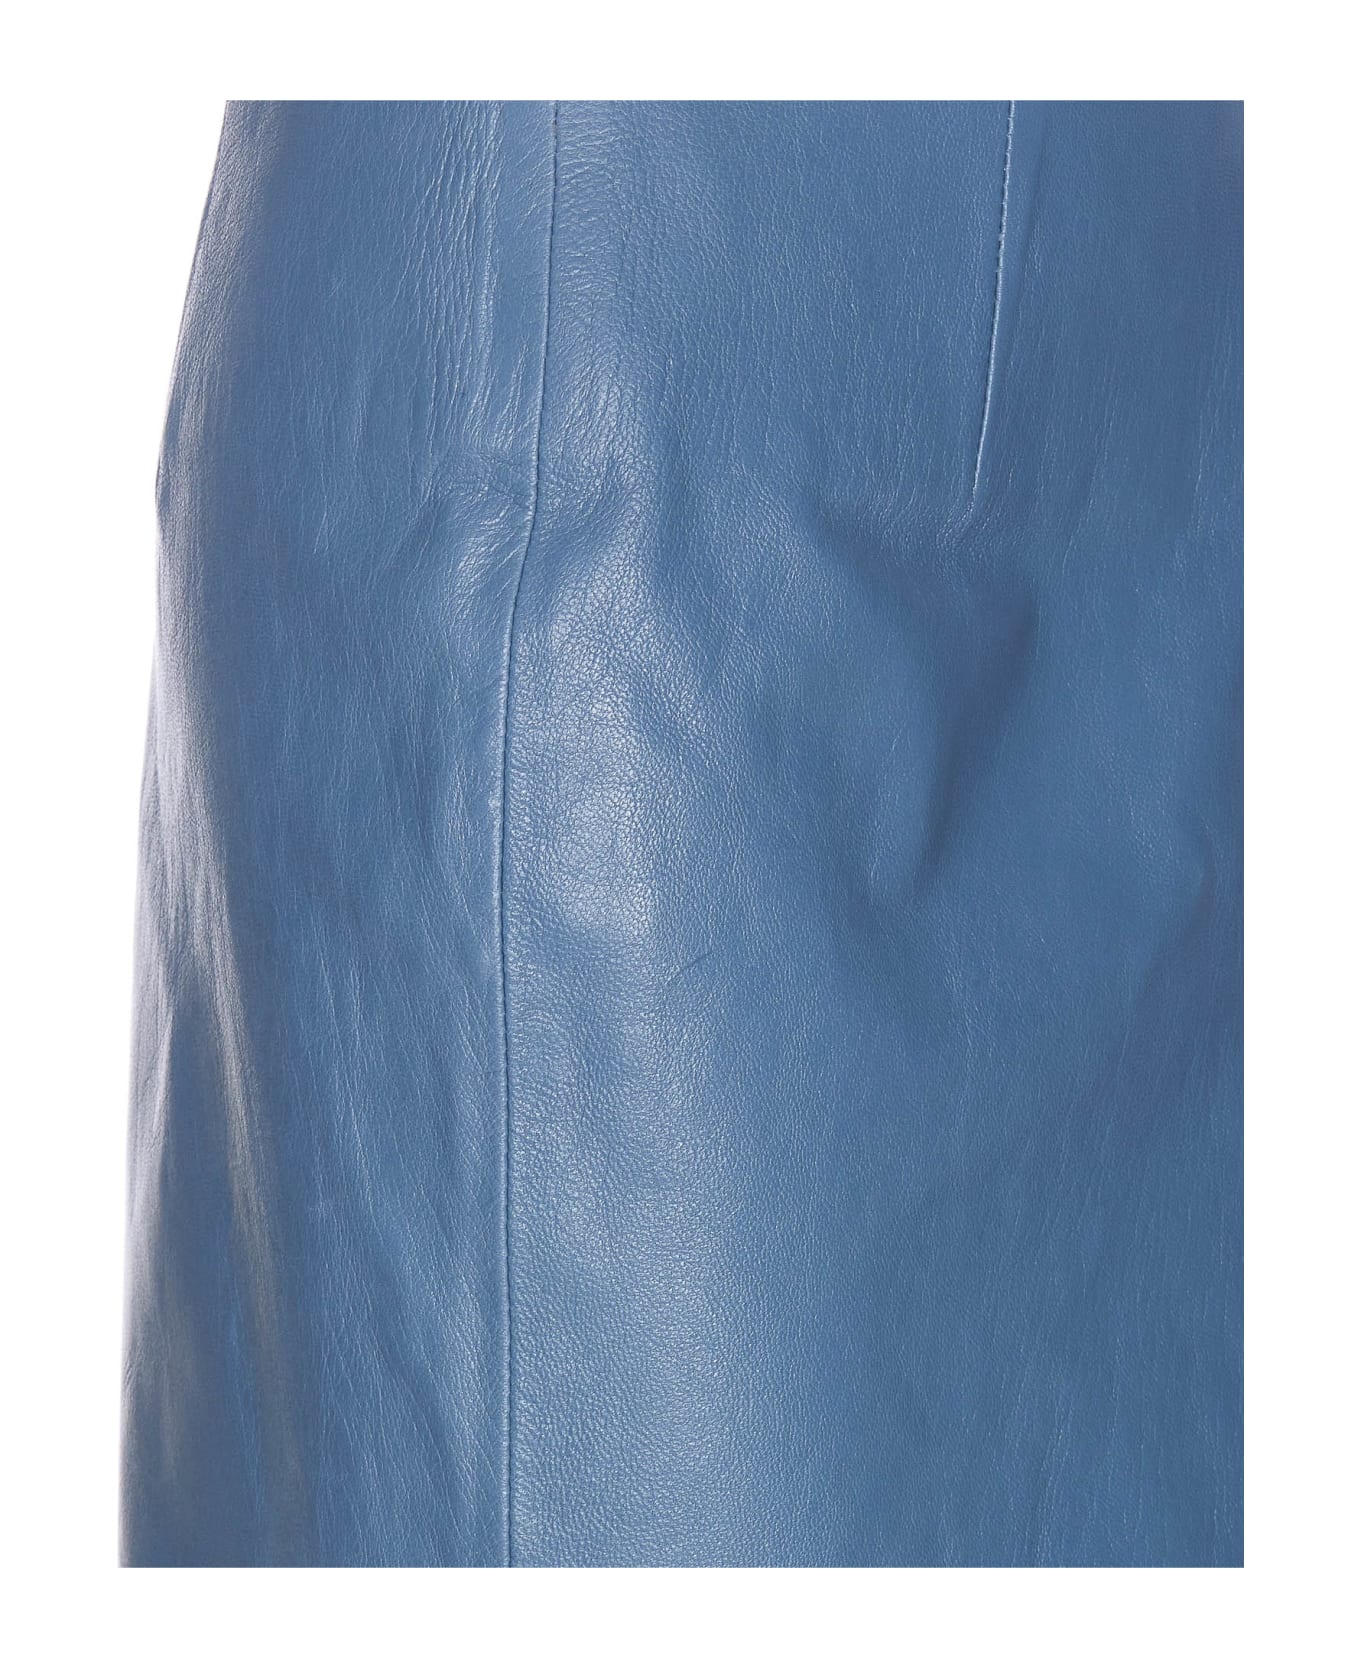 Marni Leather Skirt - 00B37